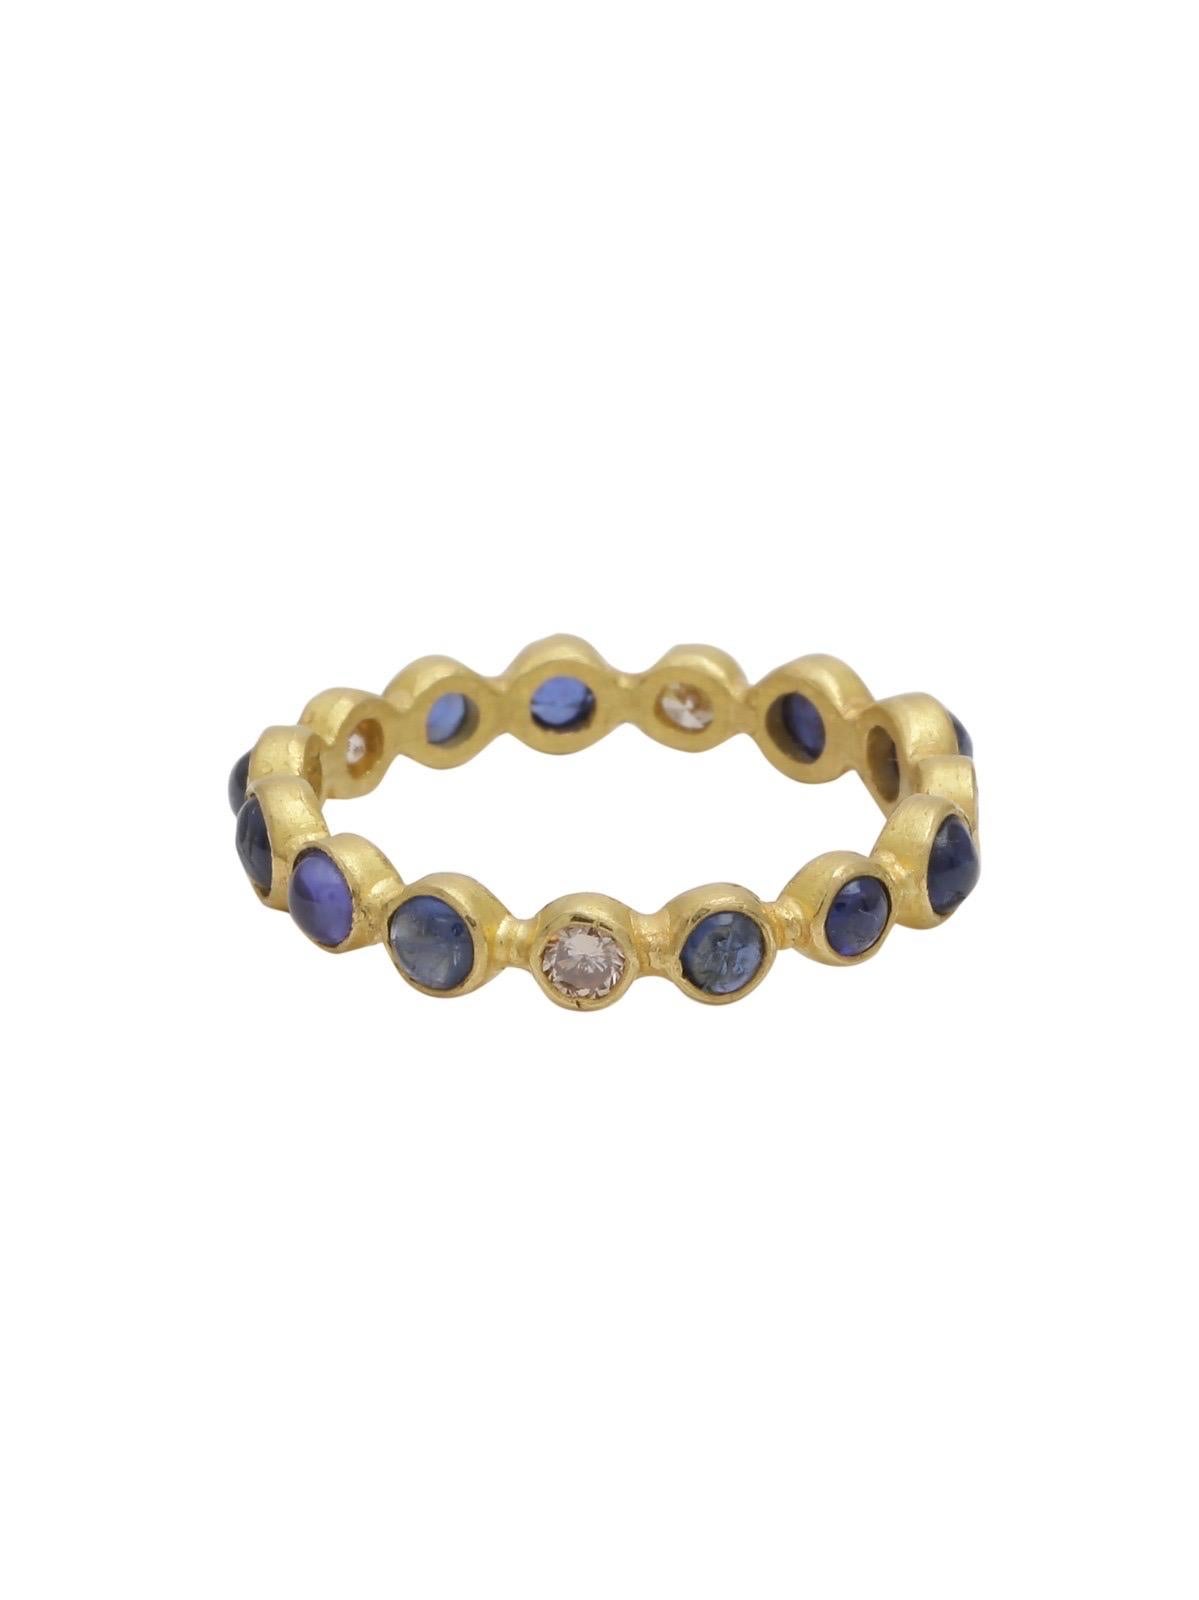 Ein wunderschönes Ewigkeitsarmband mit blauen Saphir-Cabochons und weißen Diamanten, handgefertigt in 22 Karat Gold. 
Der stapelbare Ring kann so getragen werden, wie er ist, oder mit verschiedenen Farben oder Ihren vorhandenen Bändern kombiniert